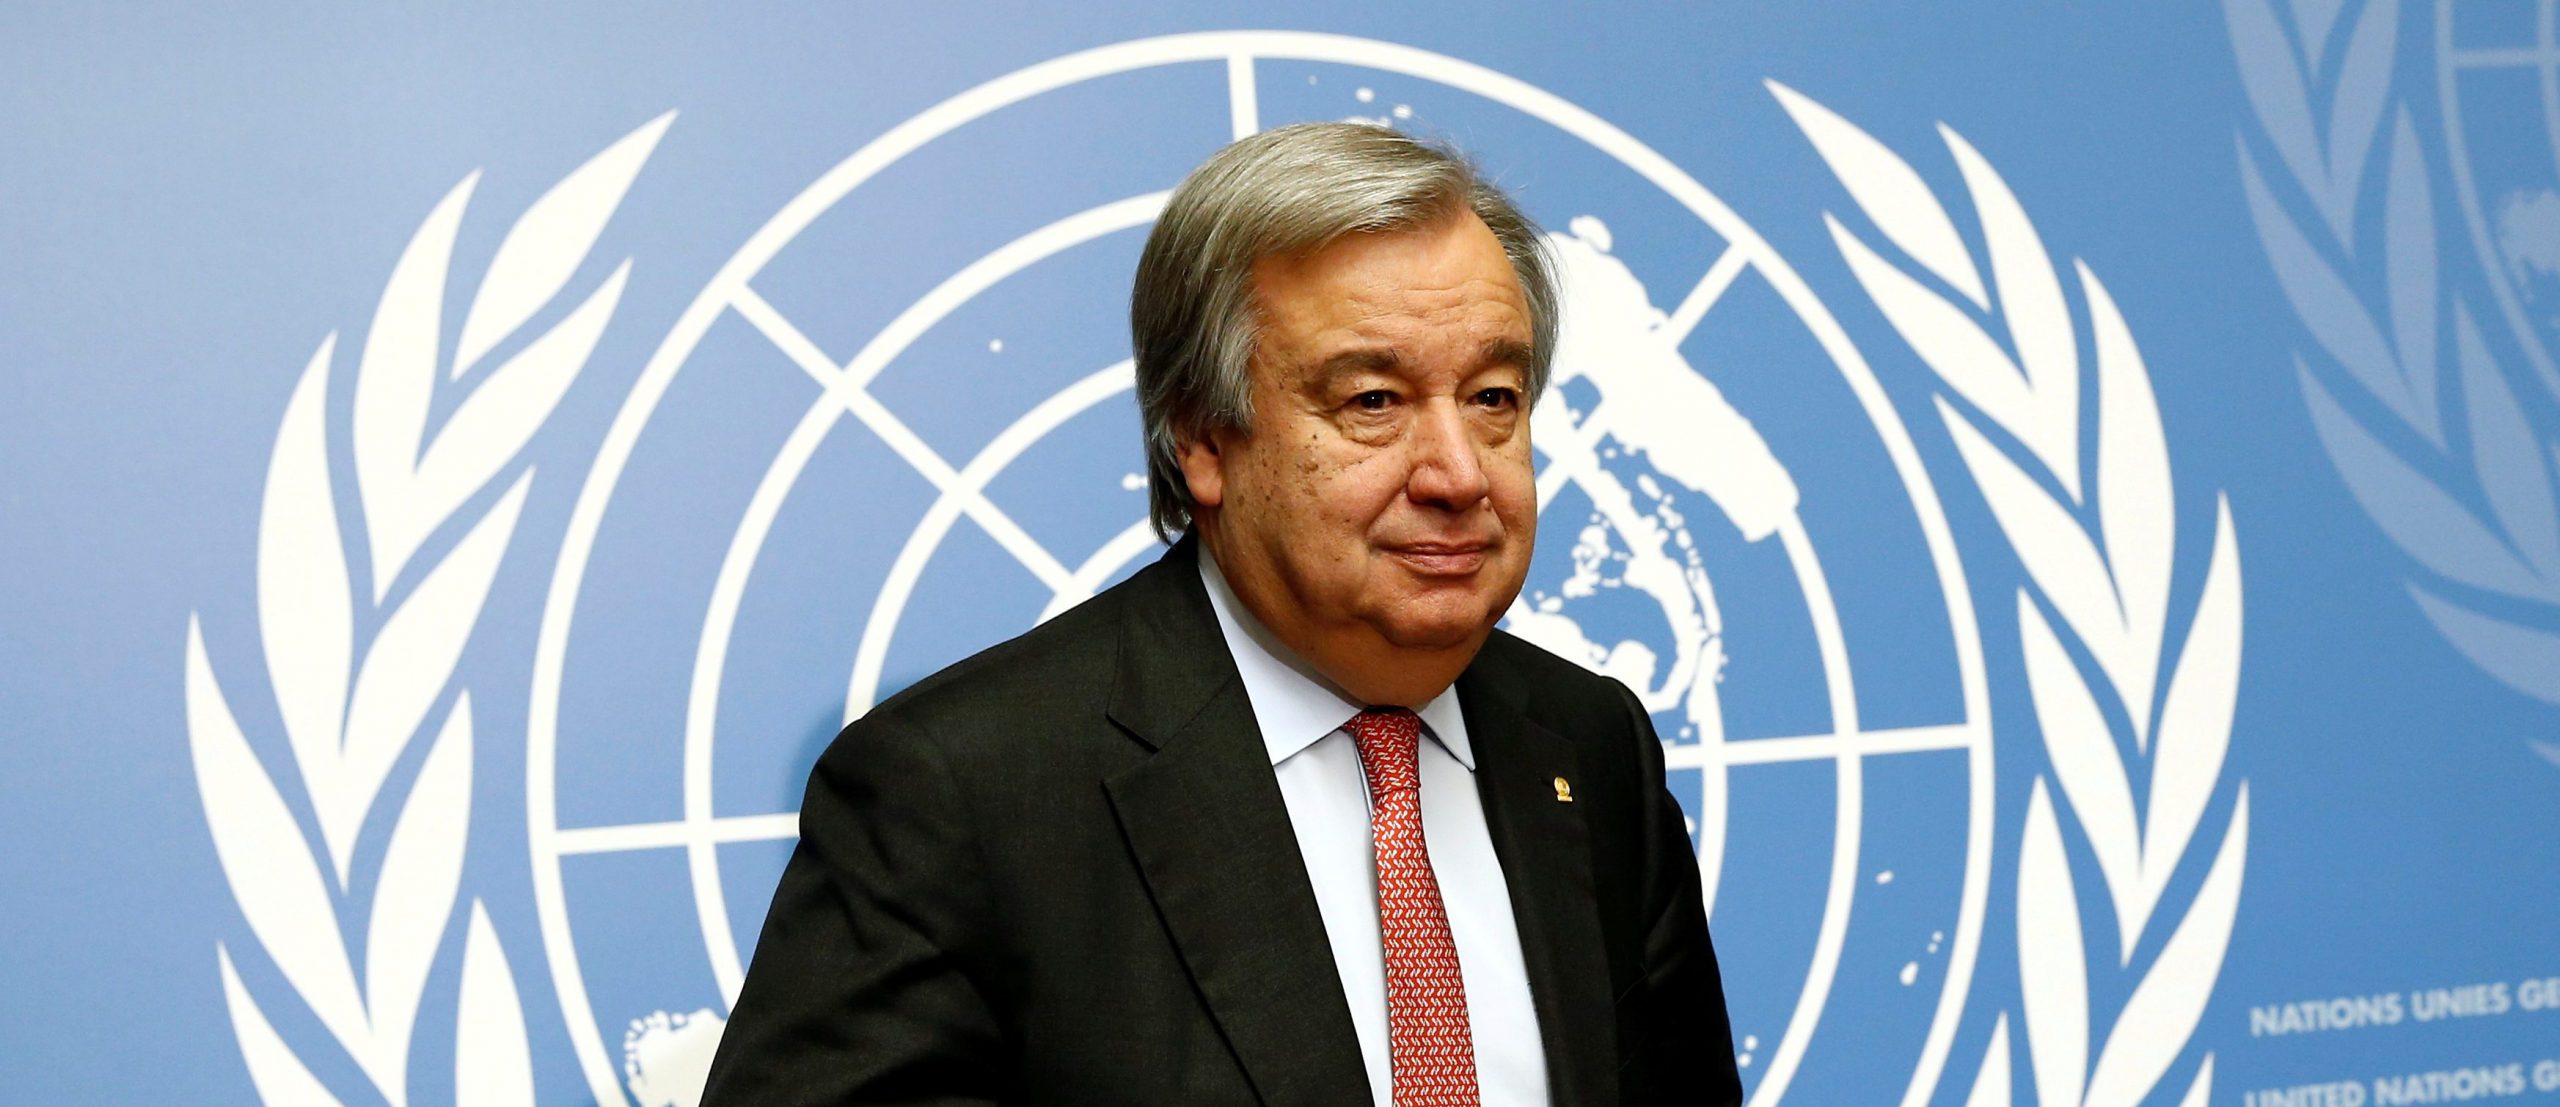 BM Genel Sekreteri António Guterres Cesur Eylem Çağrısında Bulundu!